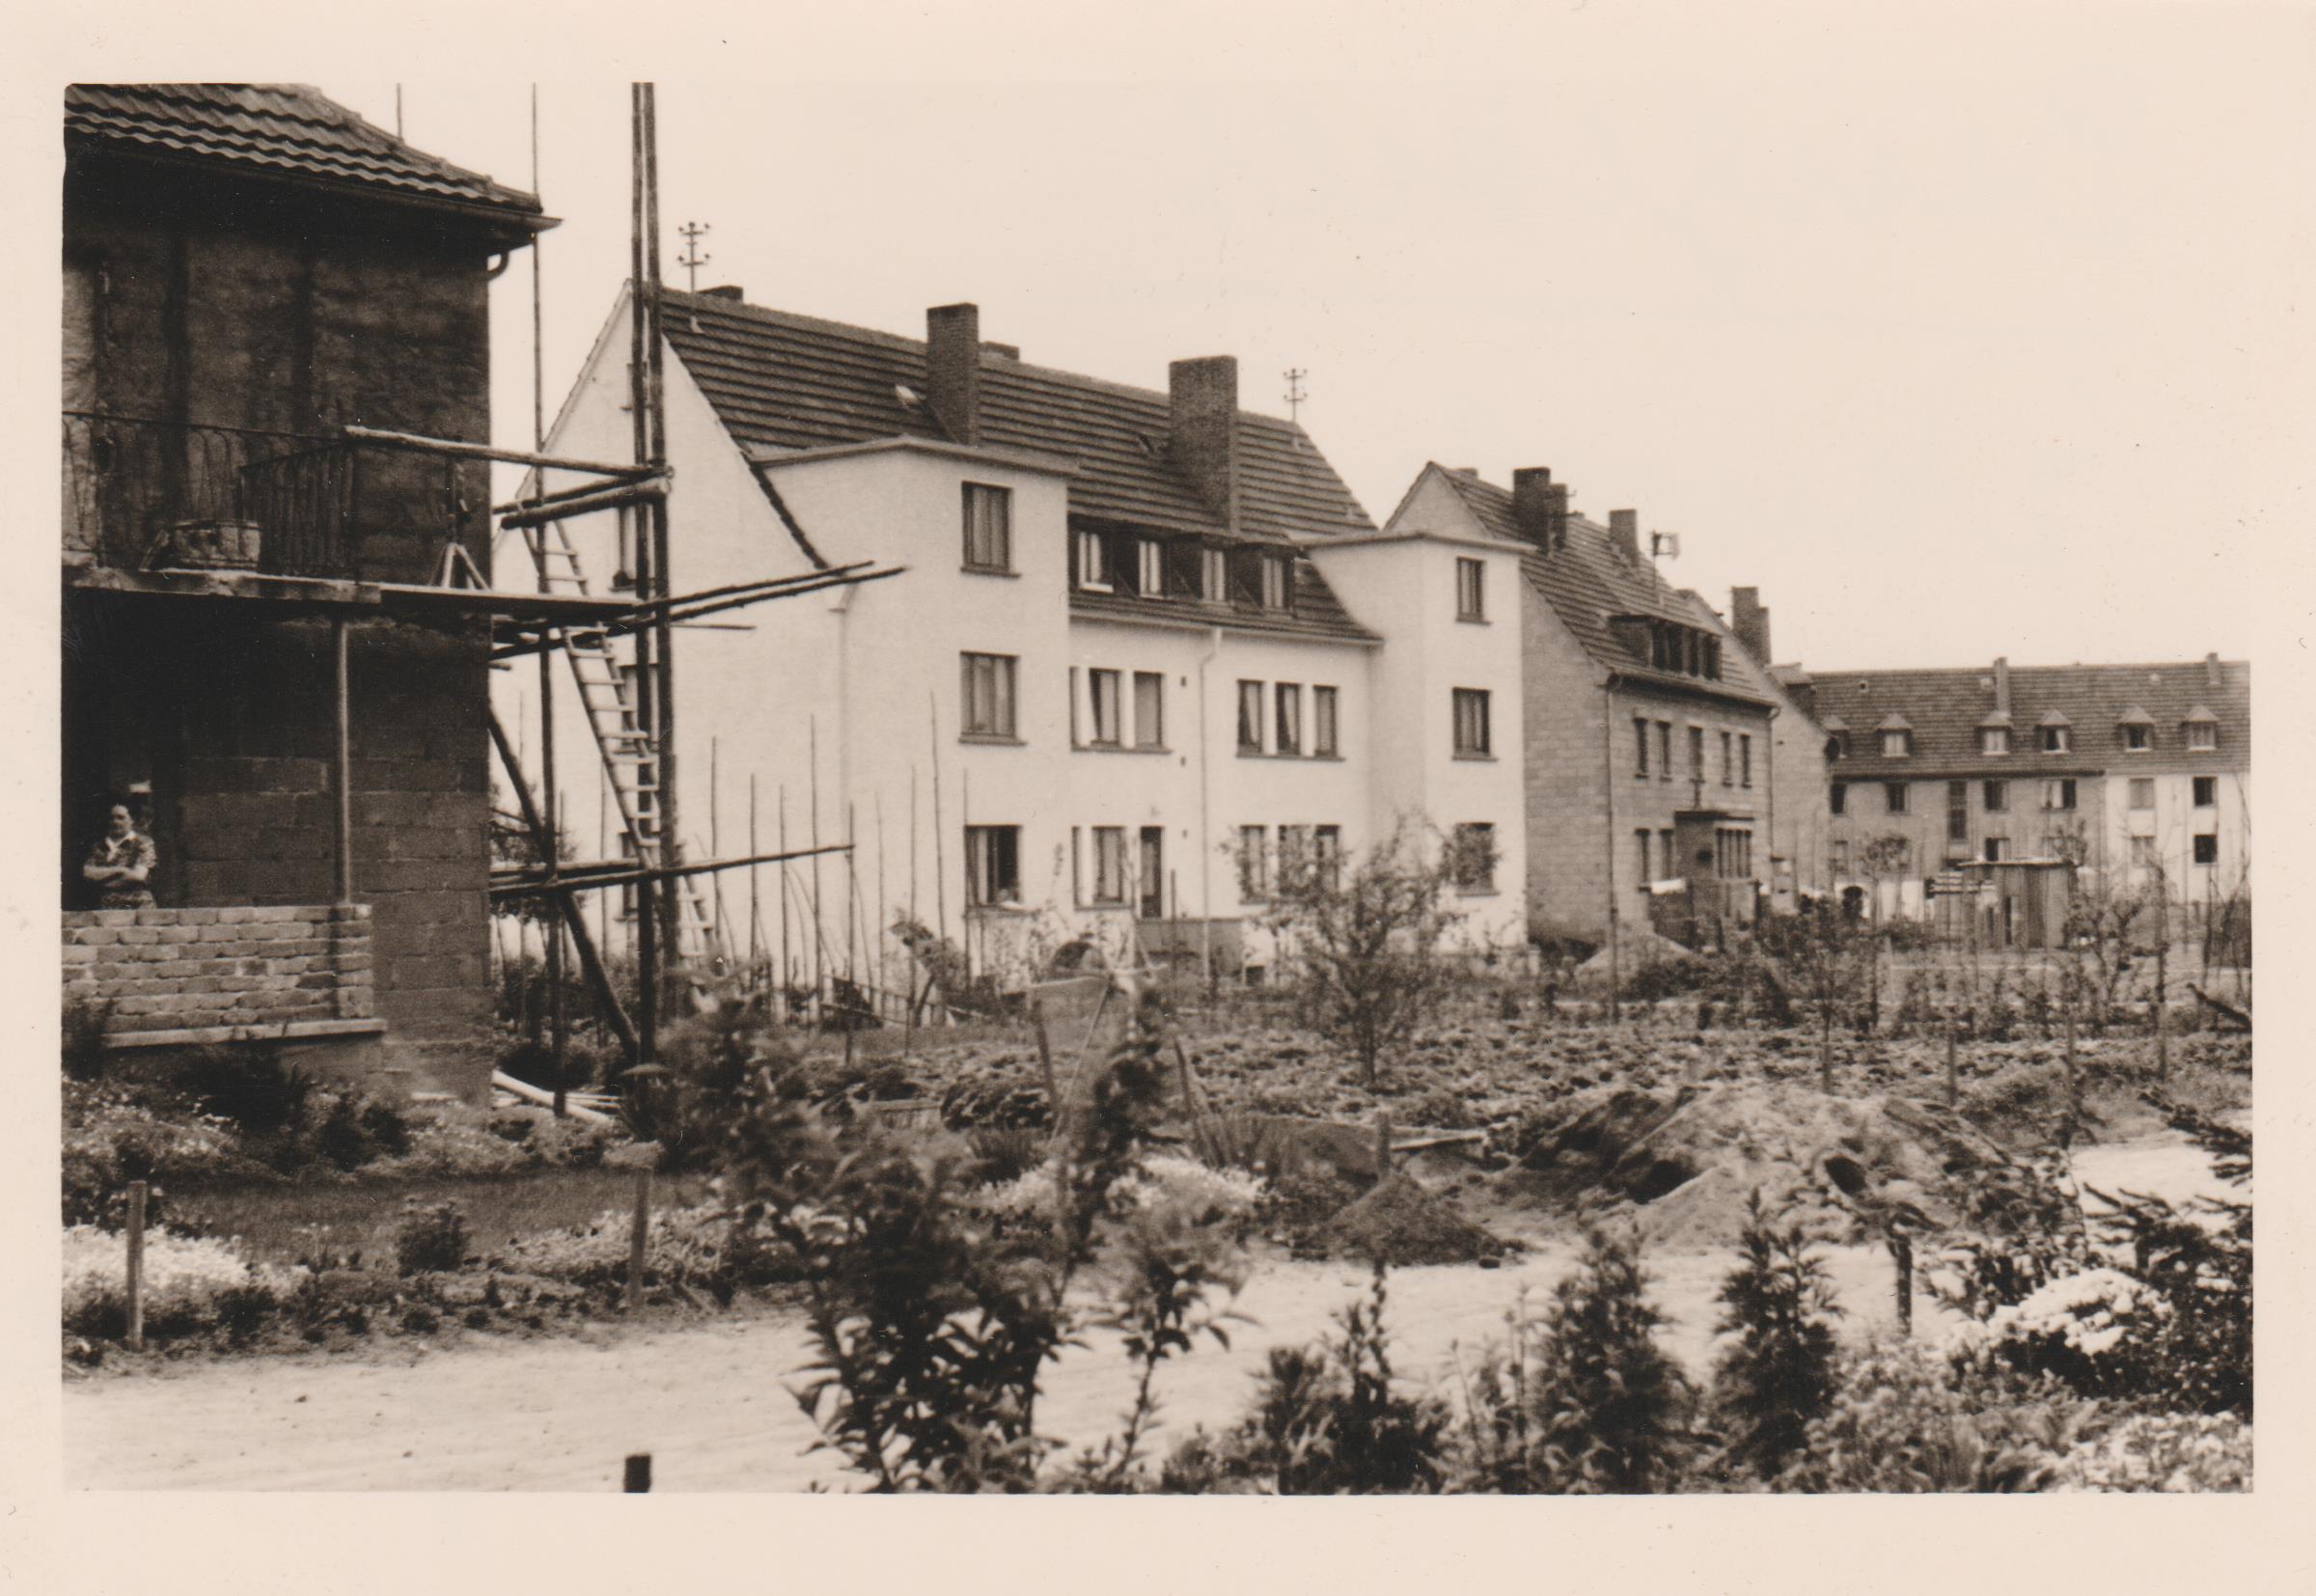 Bendorf Ringstraße, Baugebiet 1950er Jahre (REM CC BY-NC-SA)